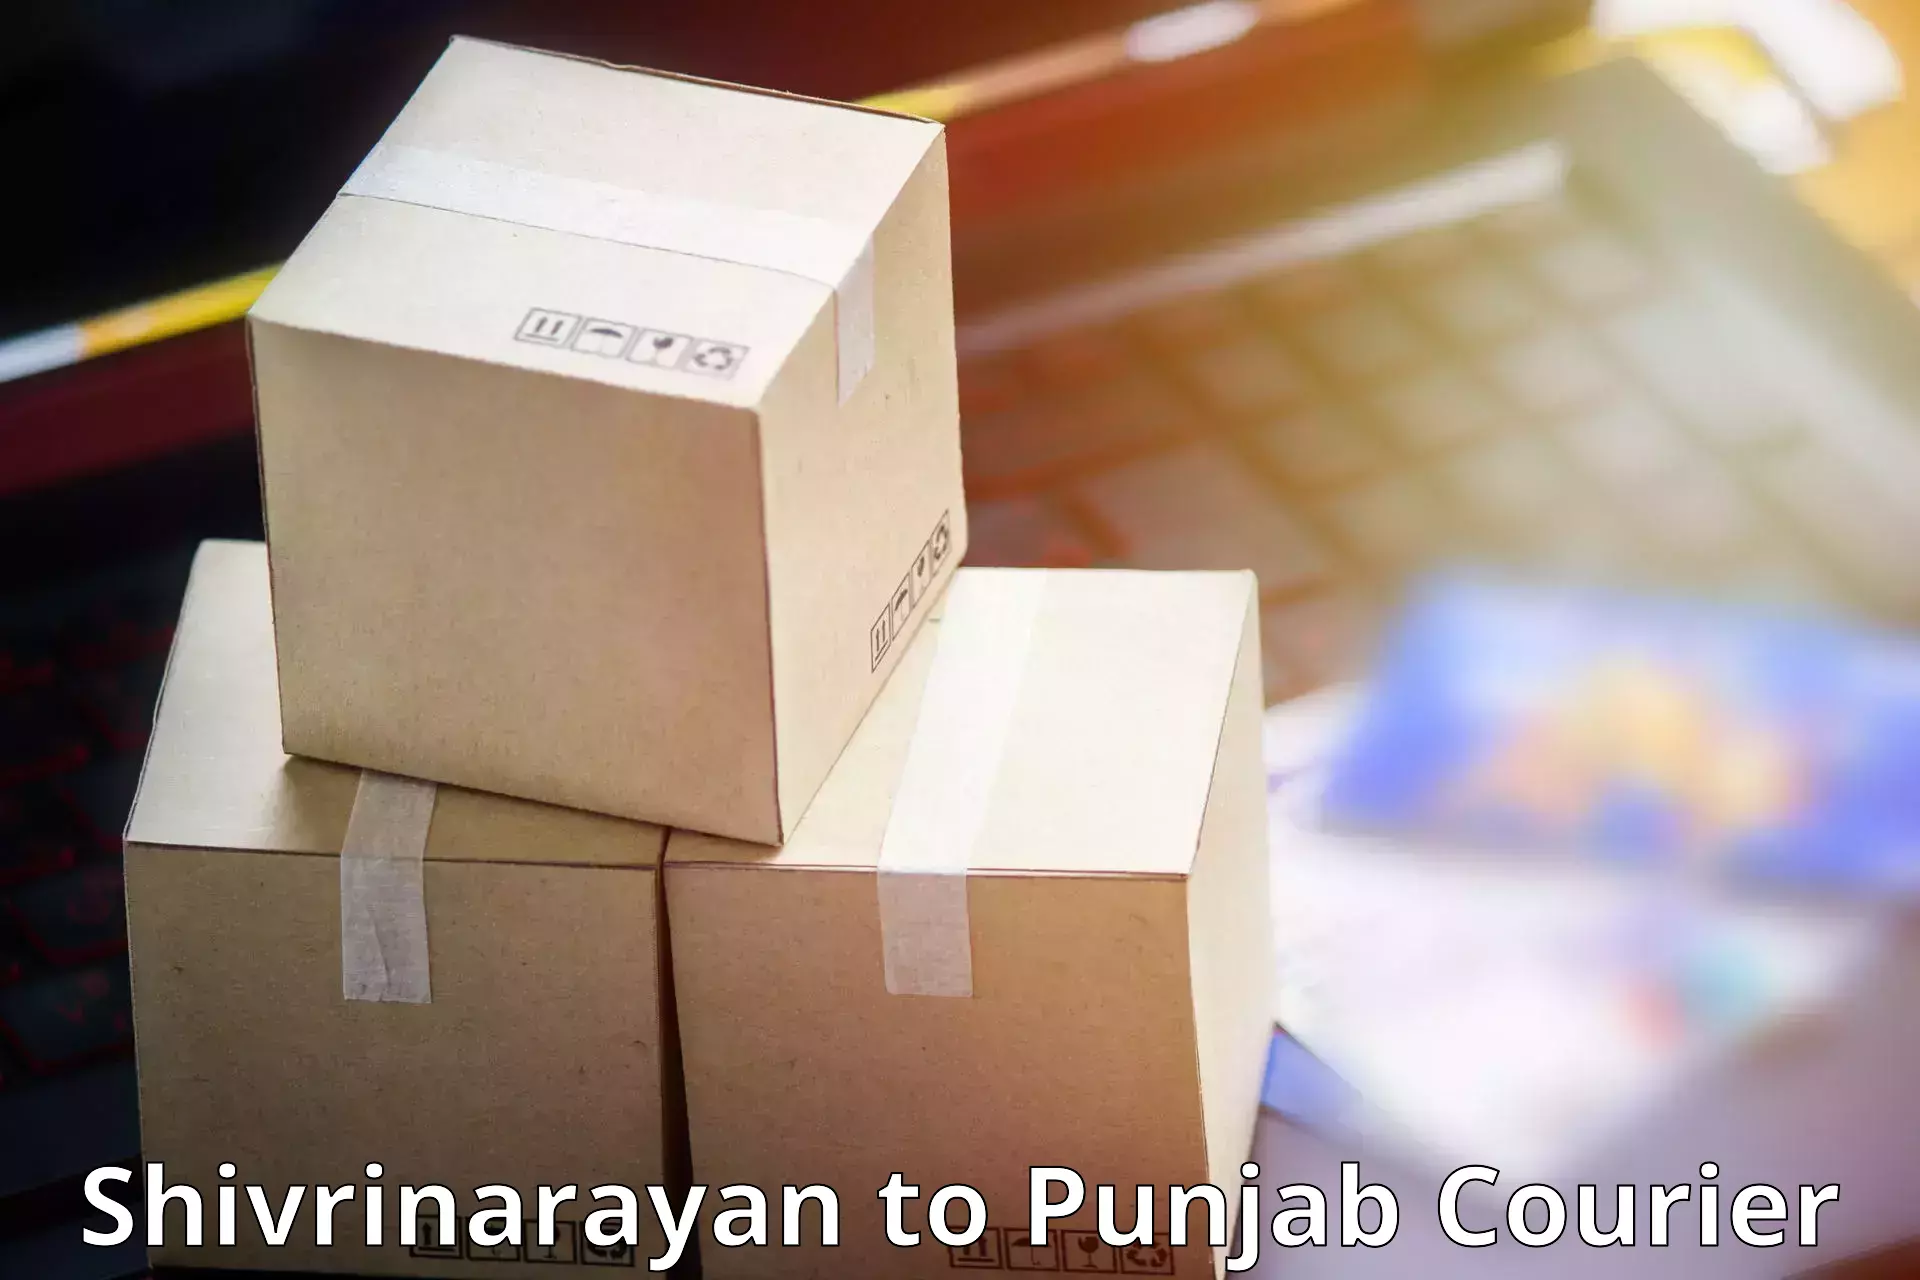 On-call courier service Shivrinarayan to Abohar